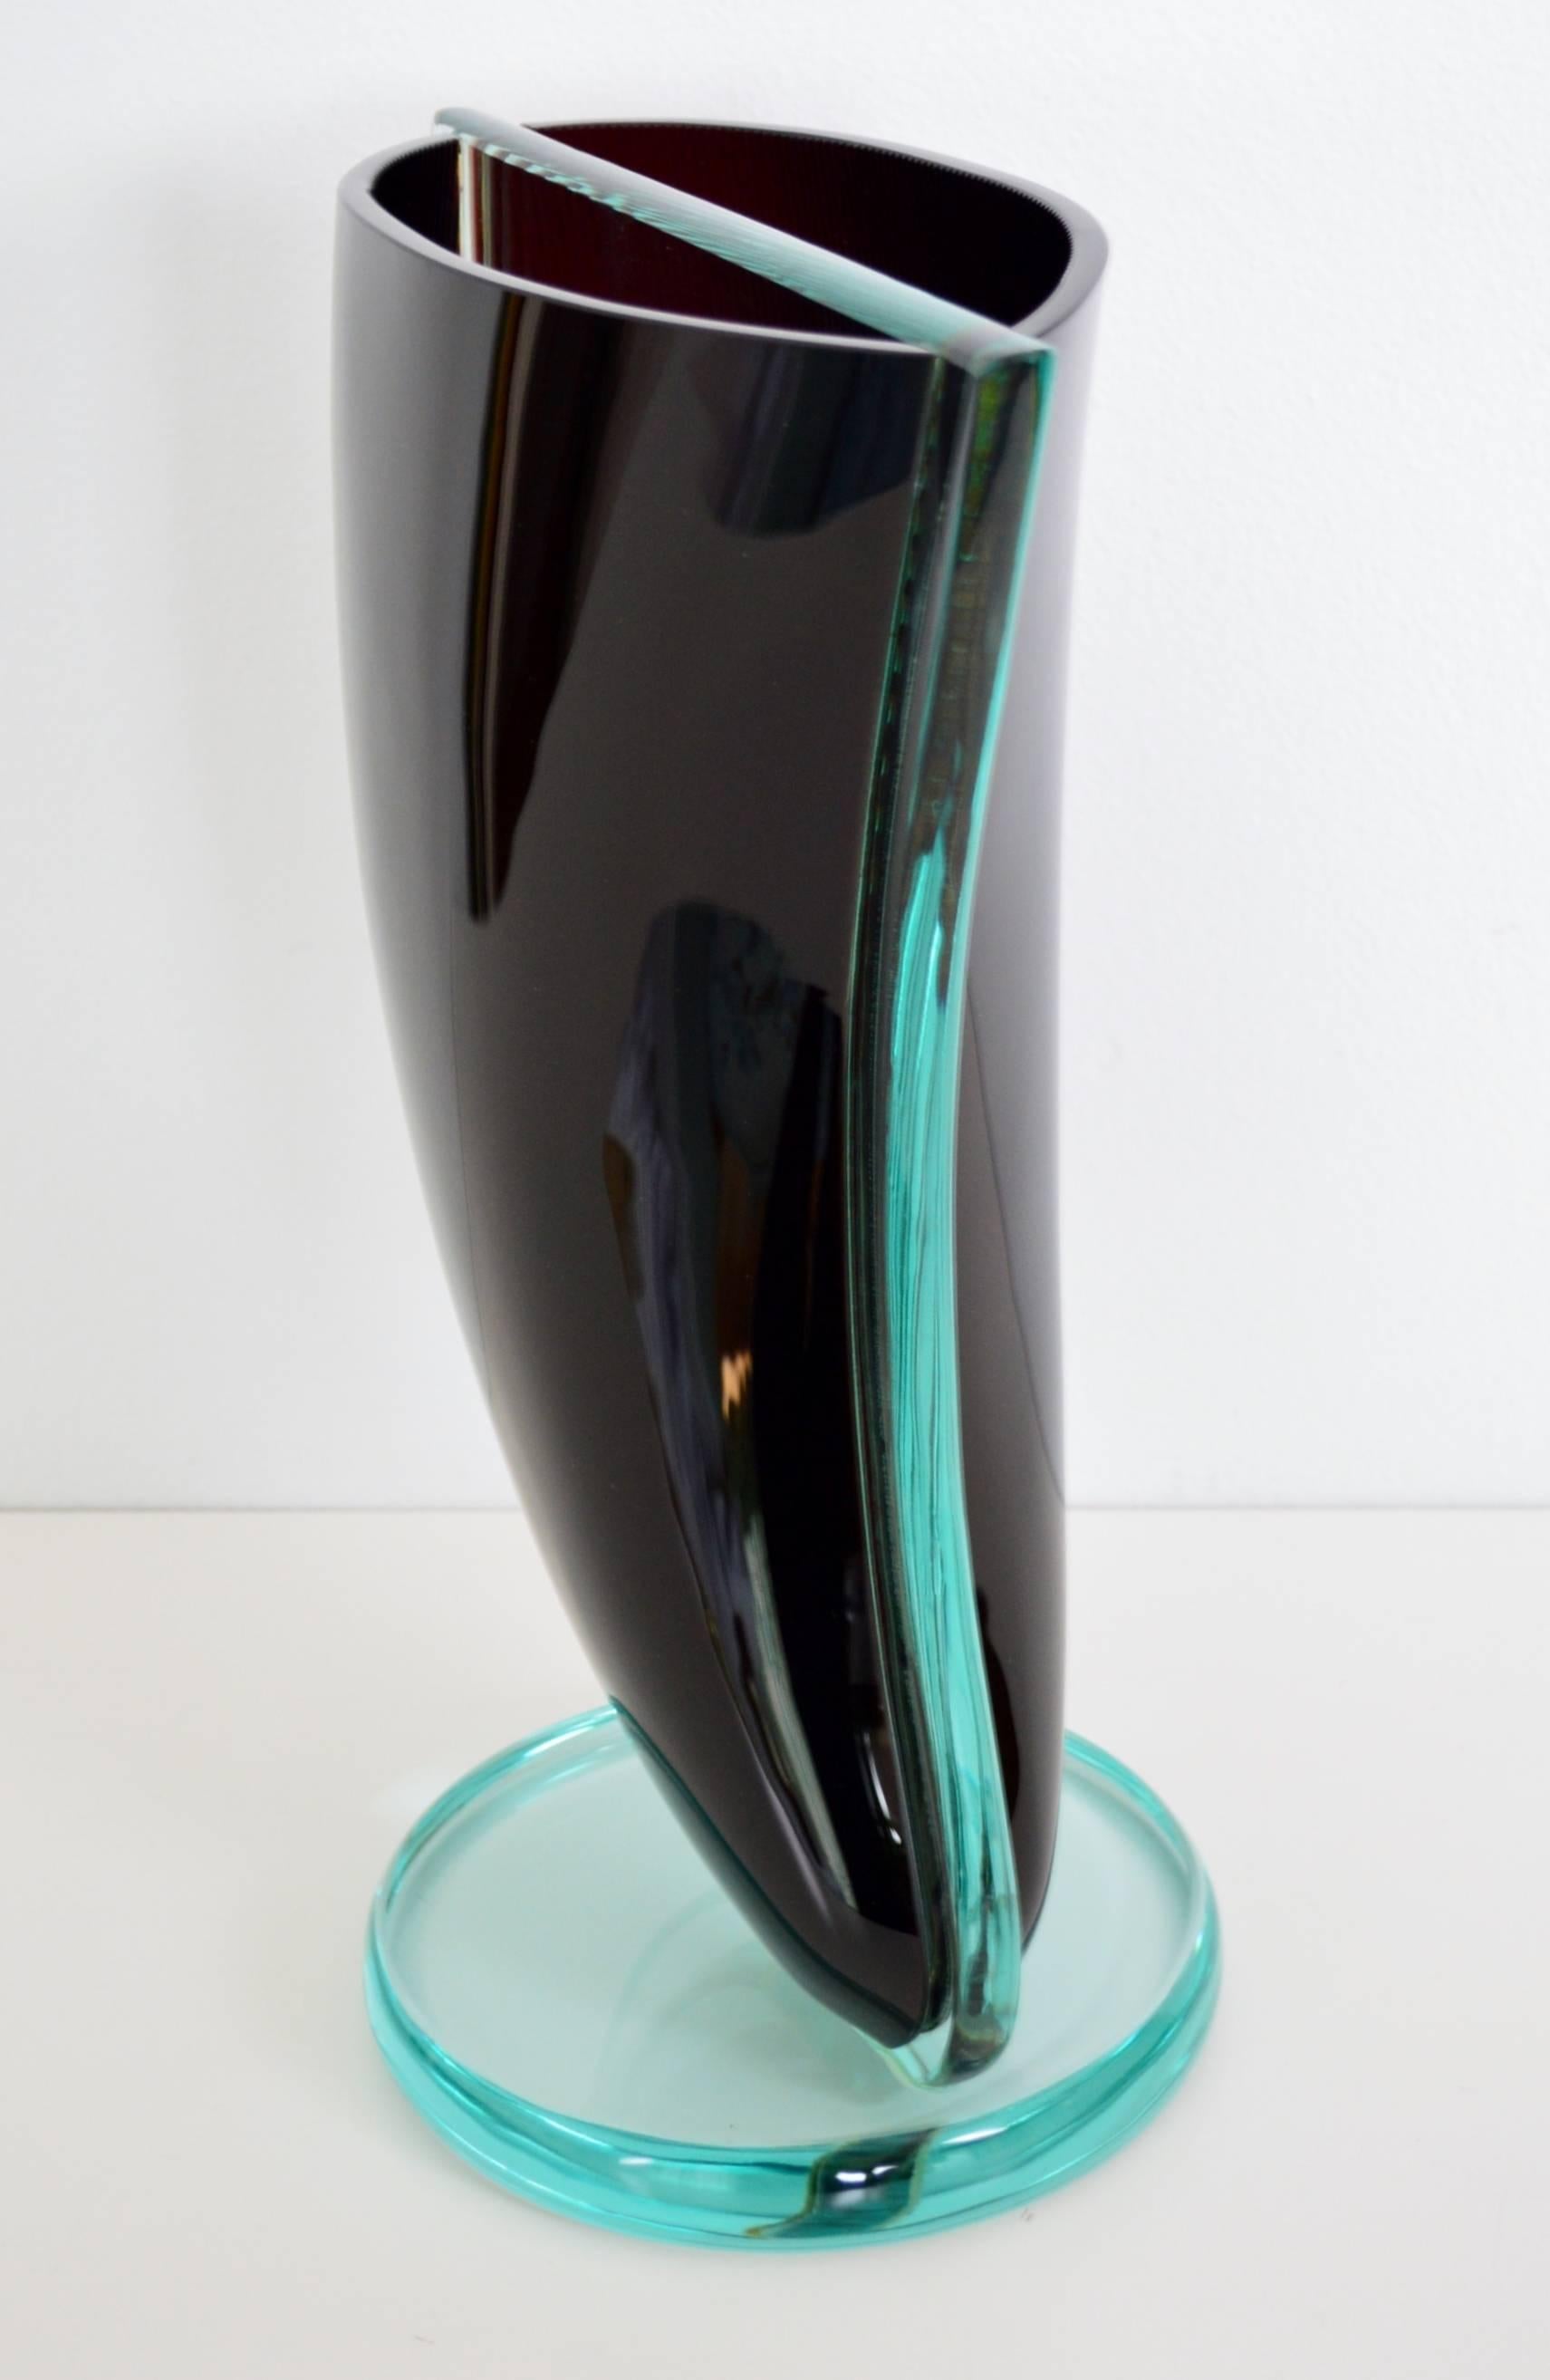 Eine sehr große Glasskulptur aus dunkelrotem und transparentem Glas. Das dunkle Rot geht fast in das Schwarz über.
Wird dem Muranoglas der 1960/1970er Jahre zugeschrieben.
Die Form der Vase scheint ein gedrehtes Segel zu sein und ist in der Mitte